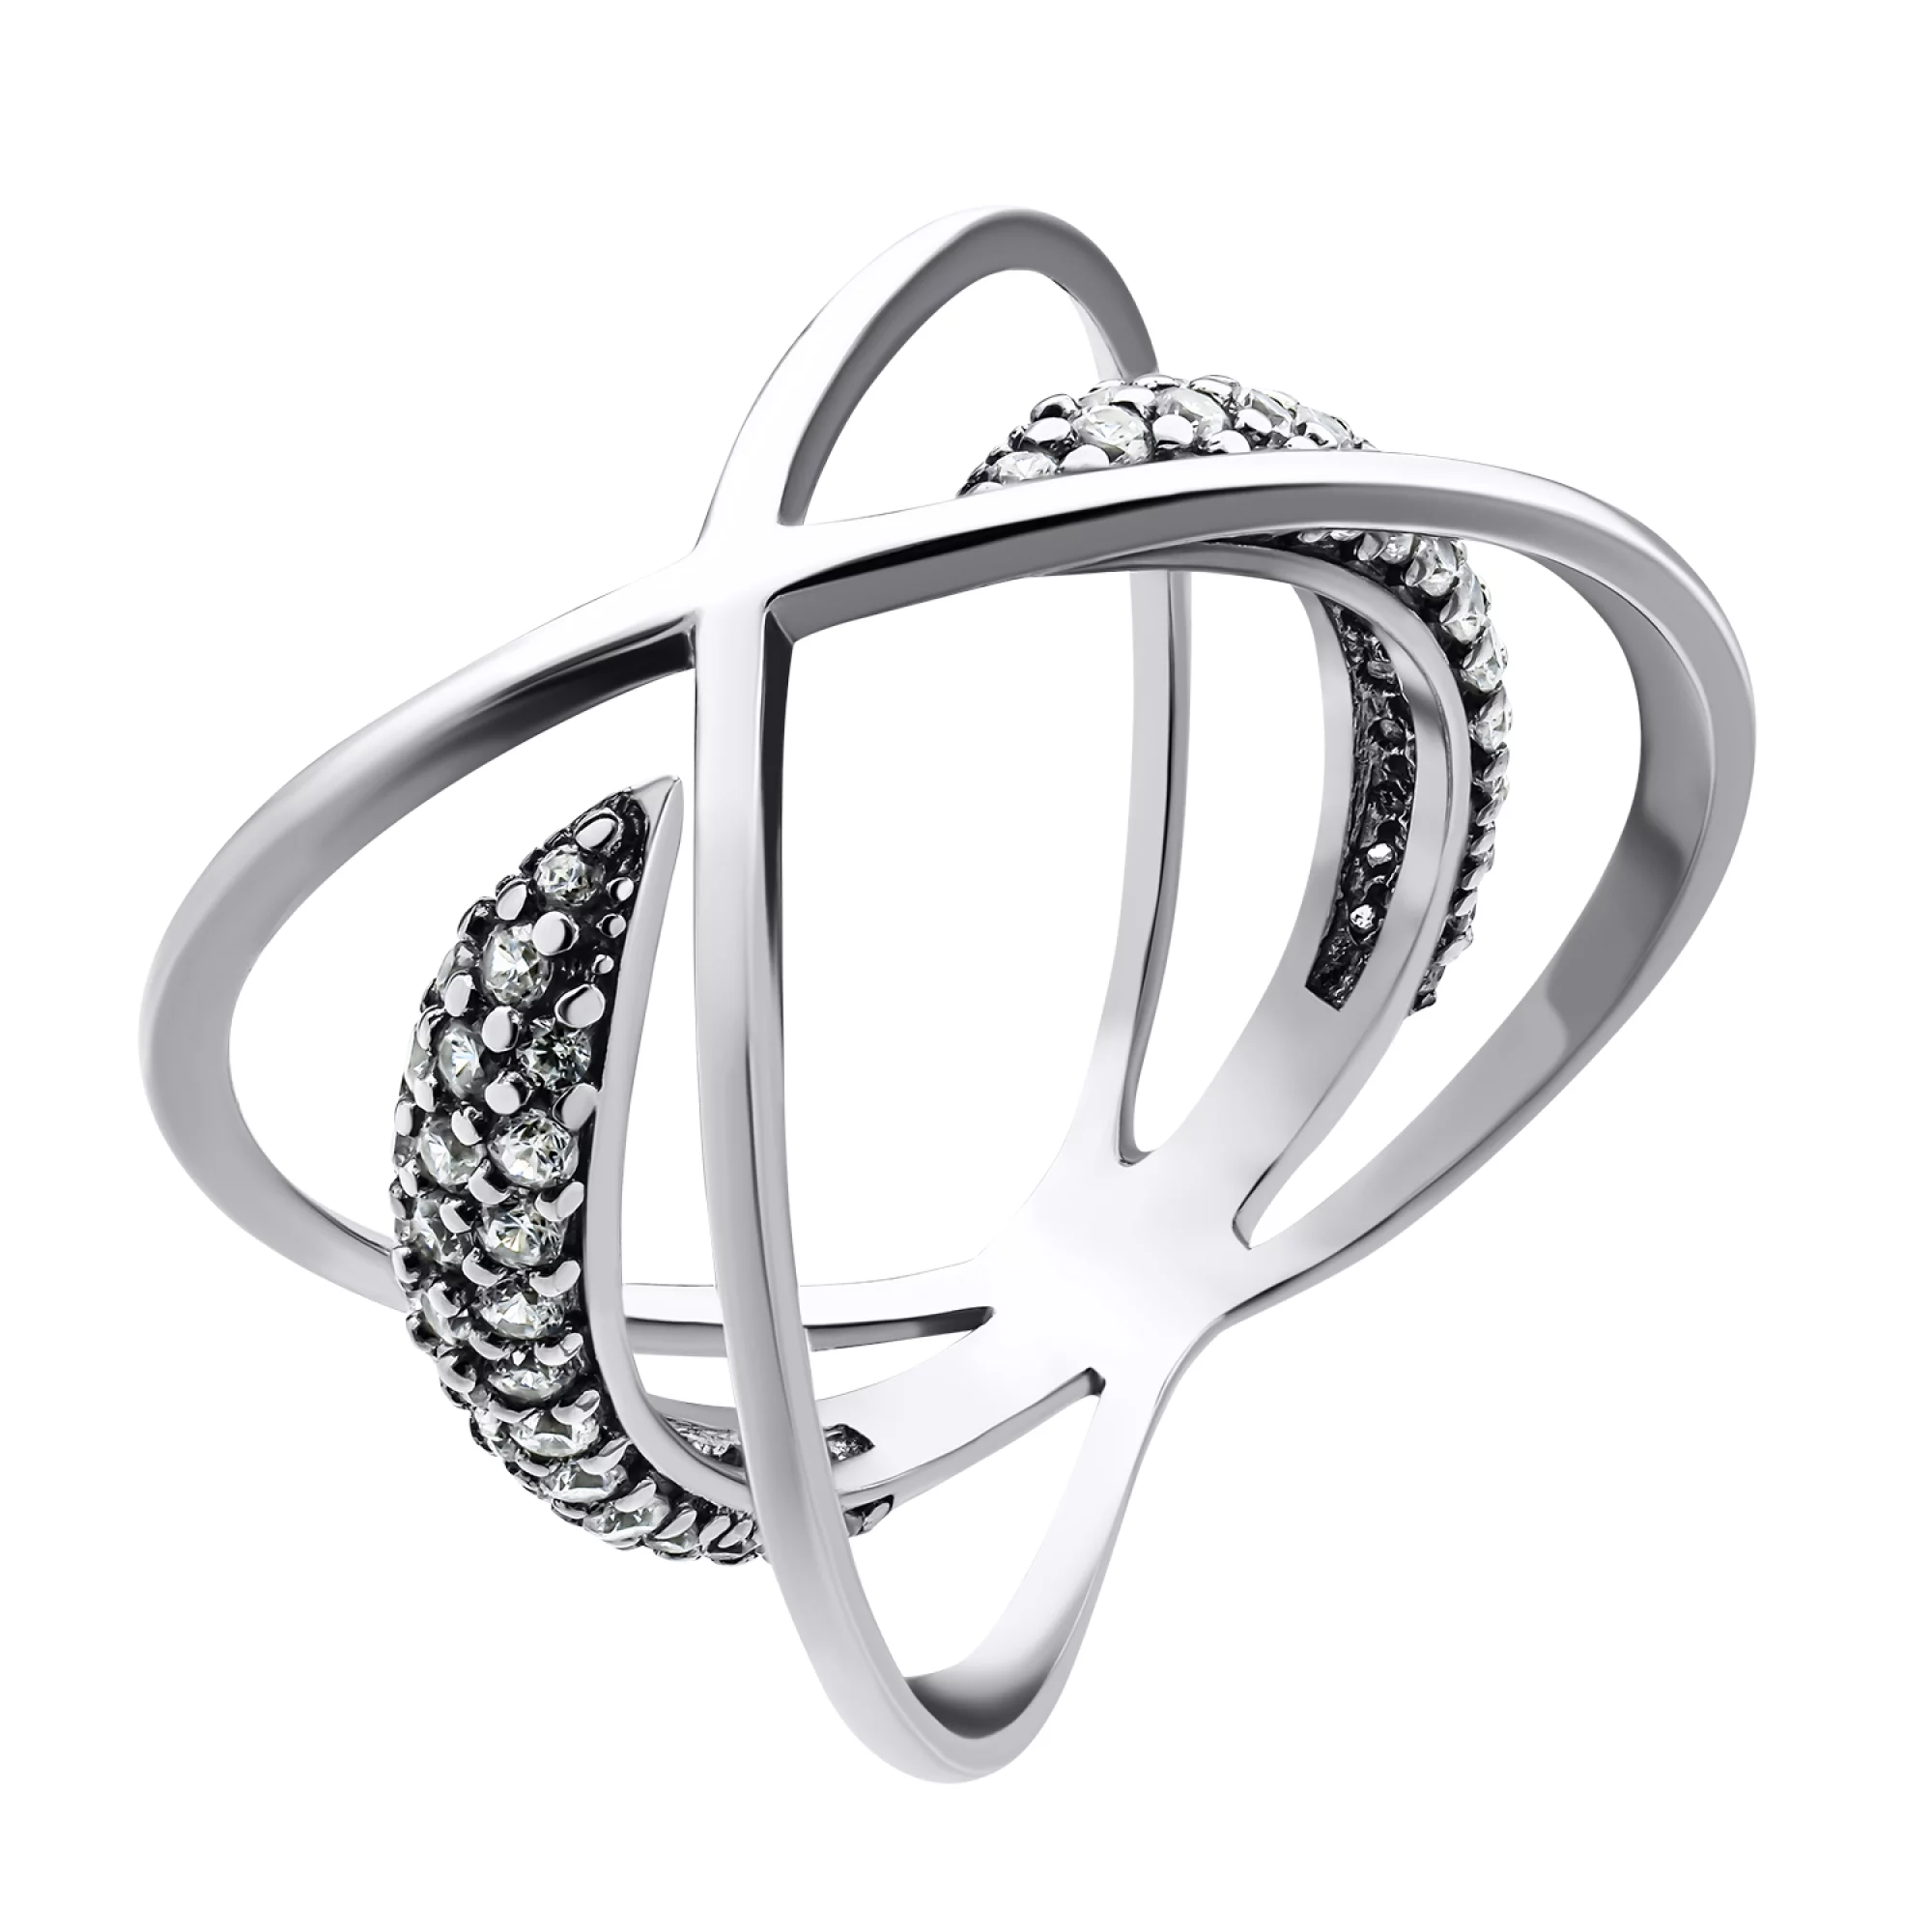 Широкое серебряное кольцо "Космос" с фианитами - 1549891 – изображение 1